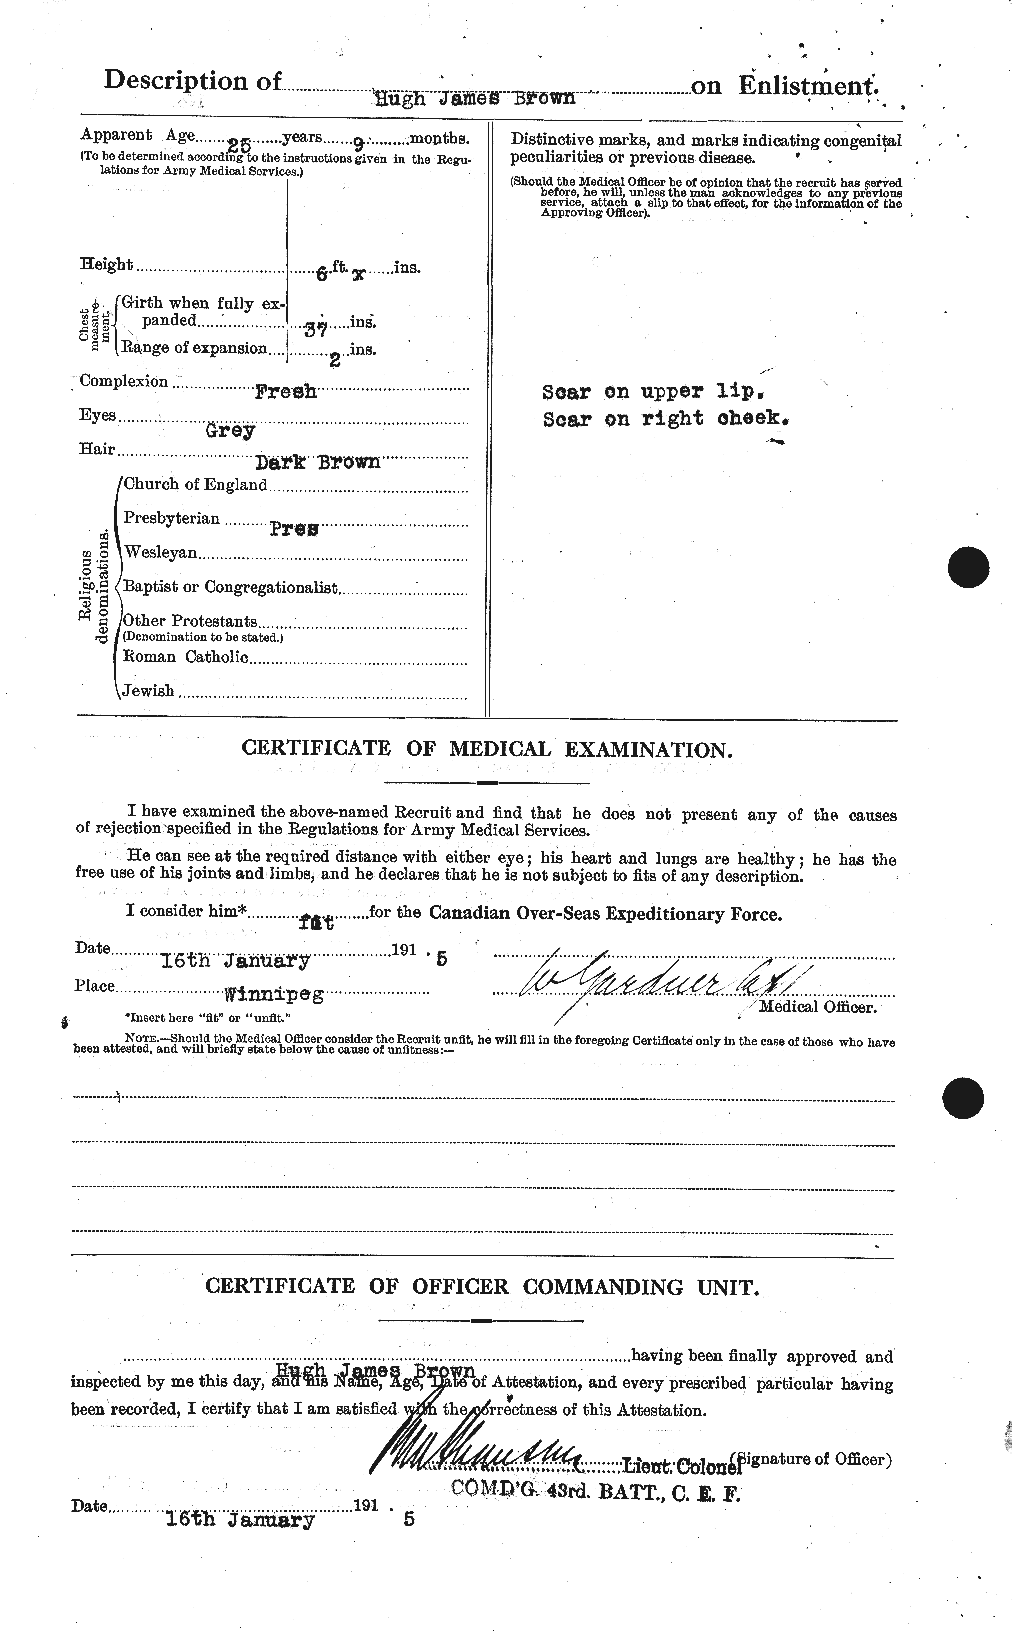 Dossiers du Personnel de la Première Guerre mondiale - CEC 265651b